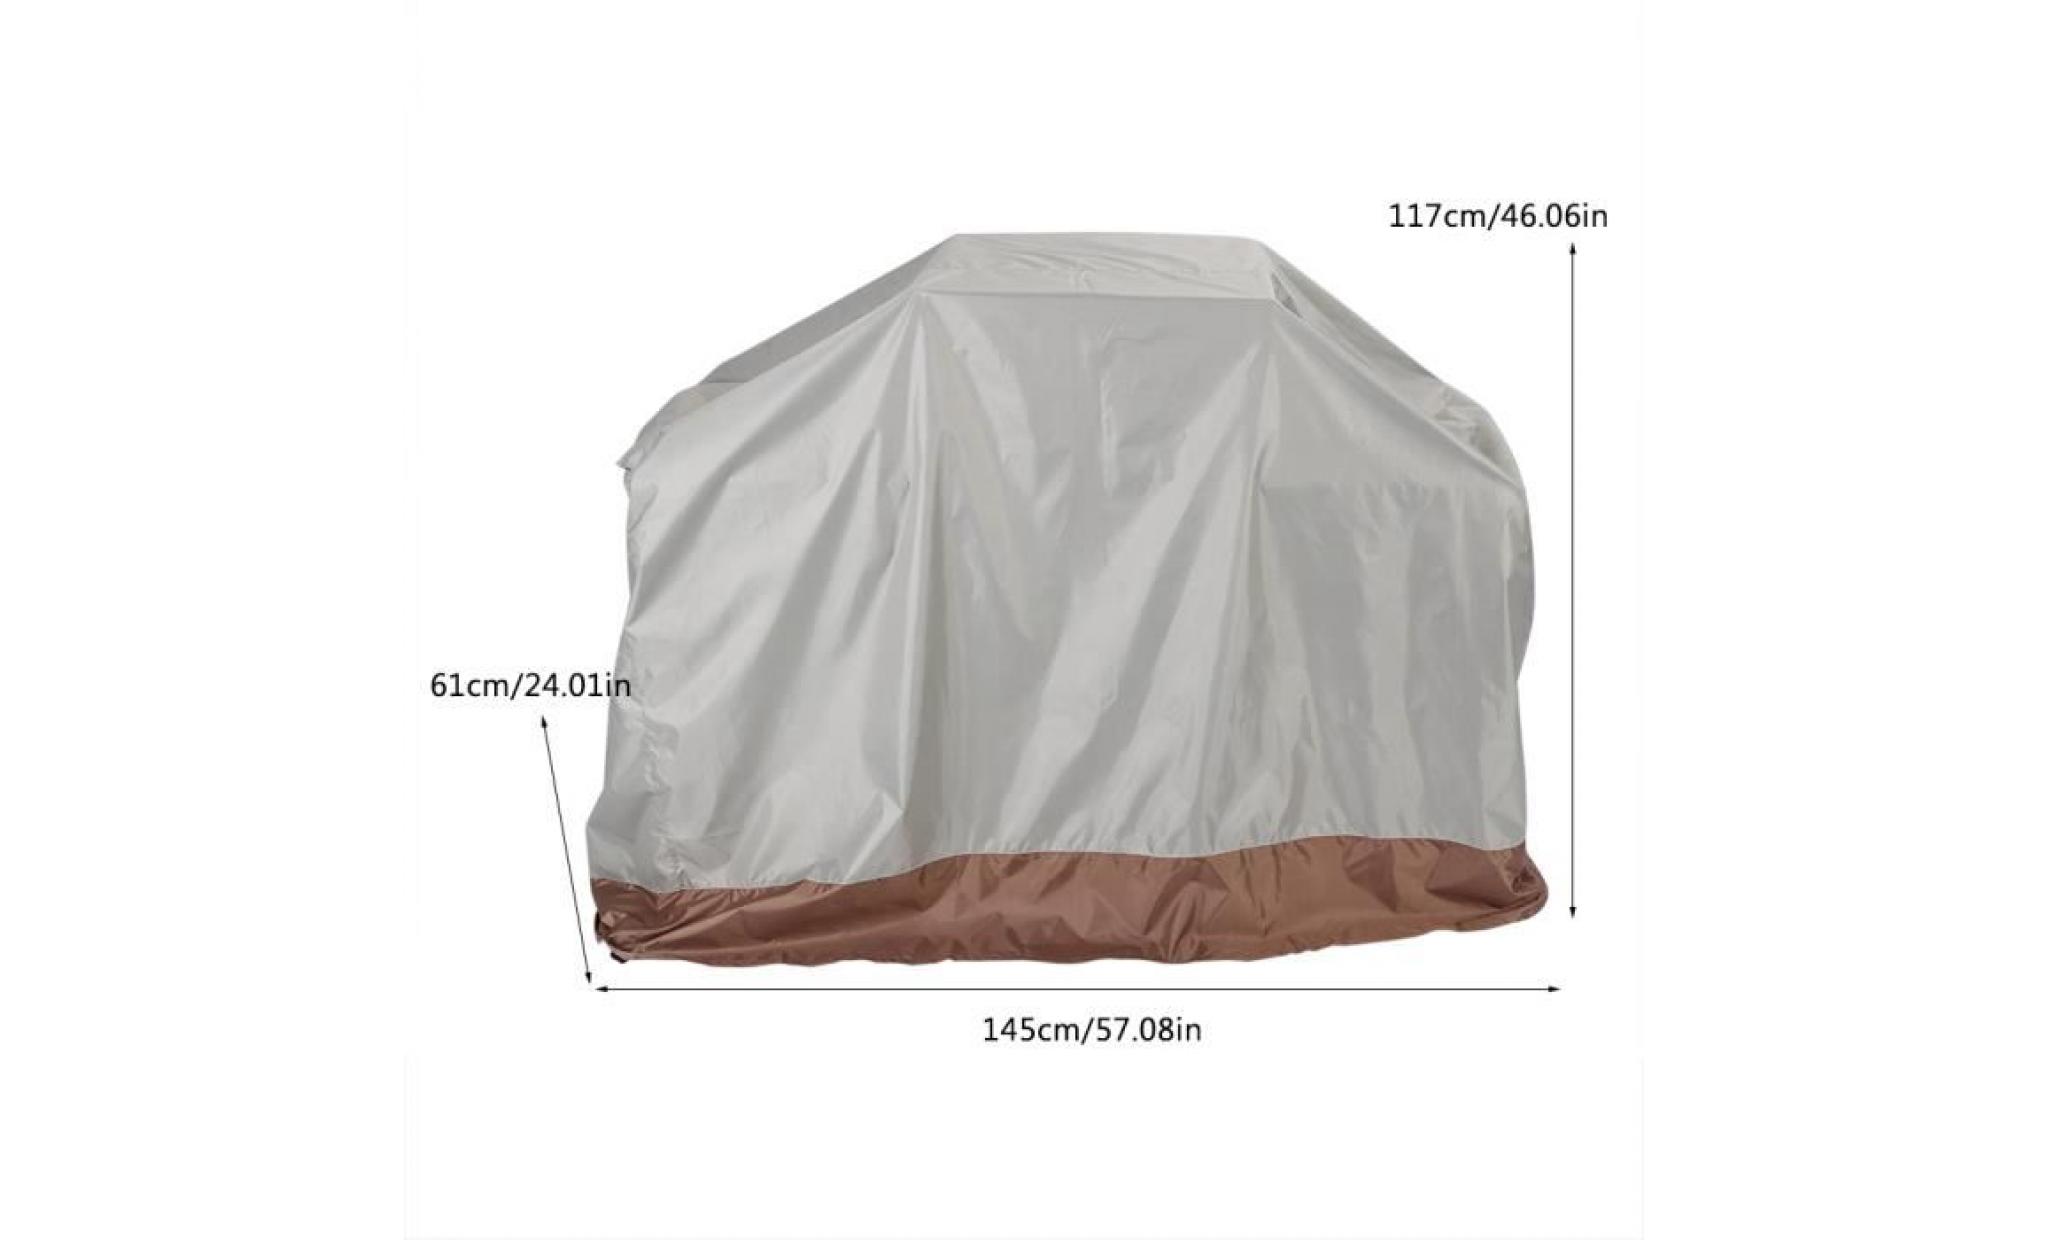 couverture de gril de barbecue en tissu d'oxford 210d extérieur imperméable 145 * 61 * 117cm   che pas cher